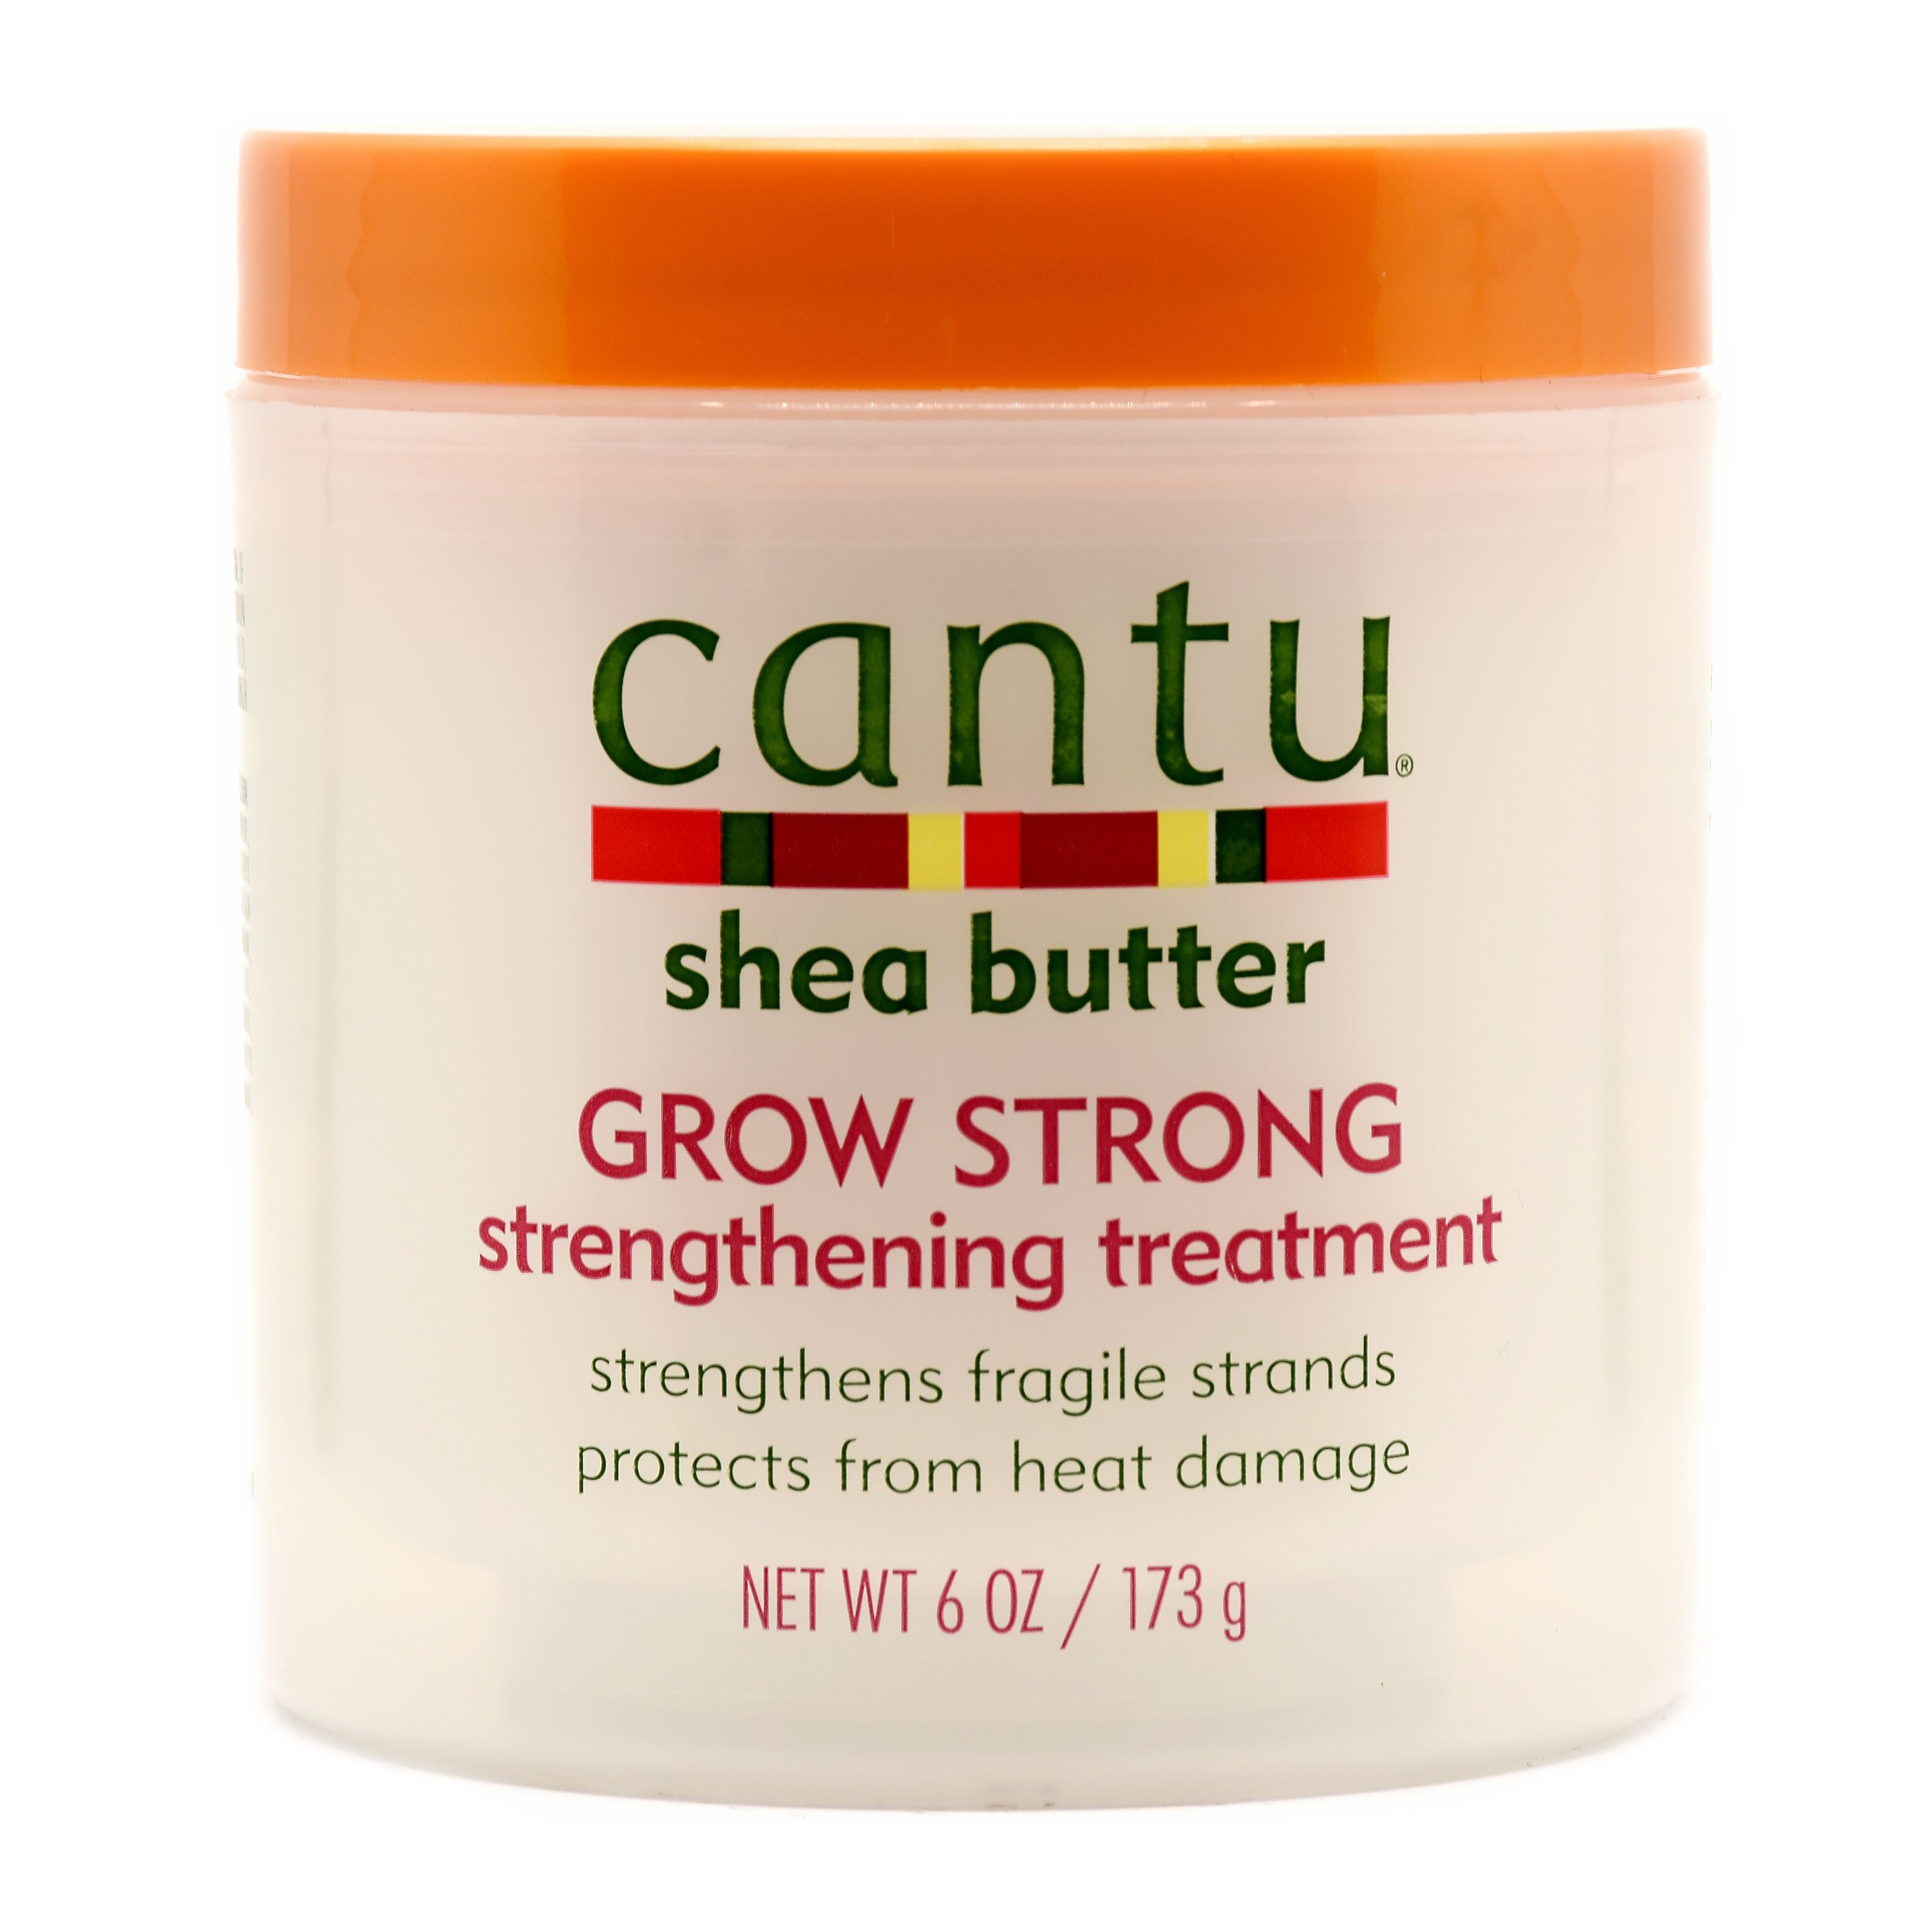 Cantu Shea Butter Grow Strong Strengthening Treatment - 173g